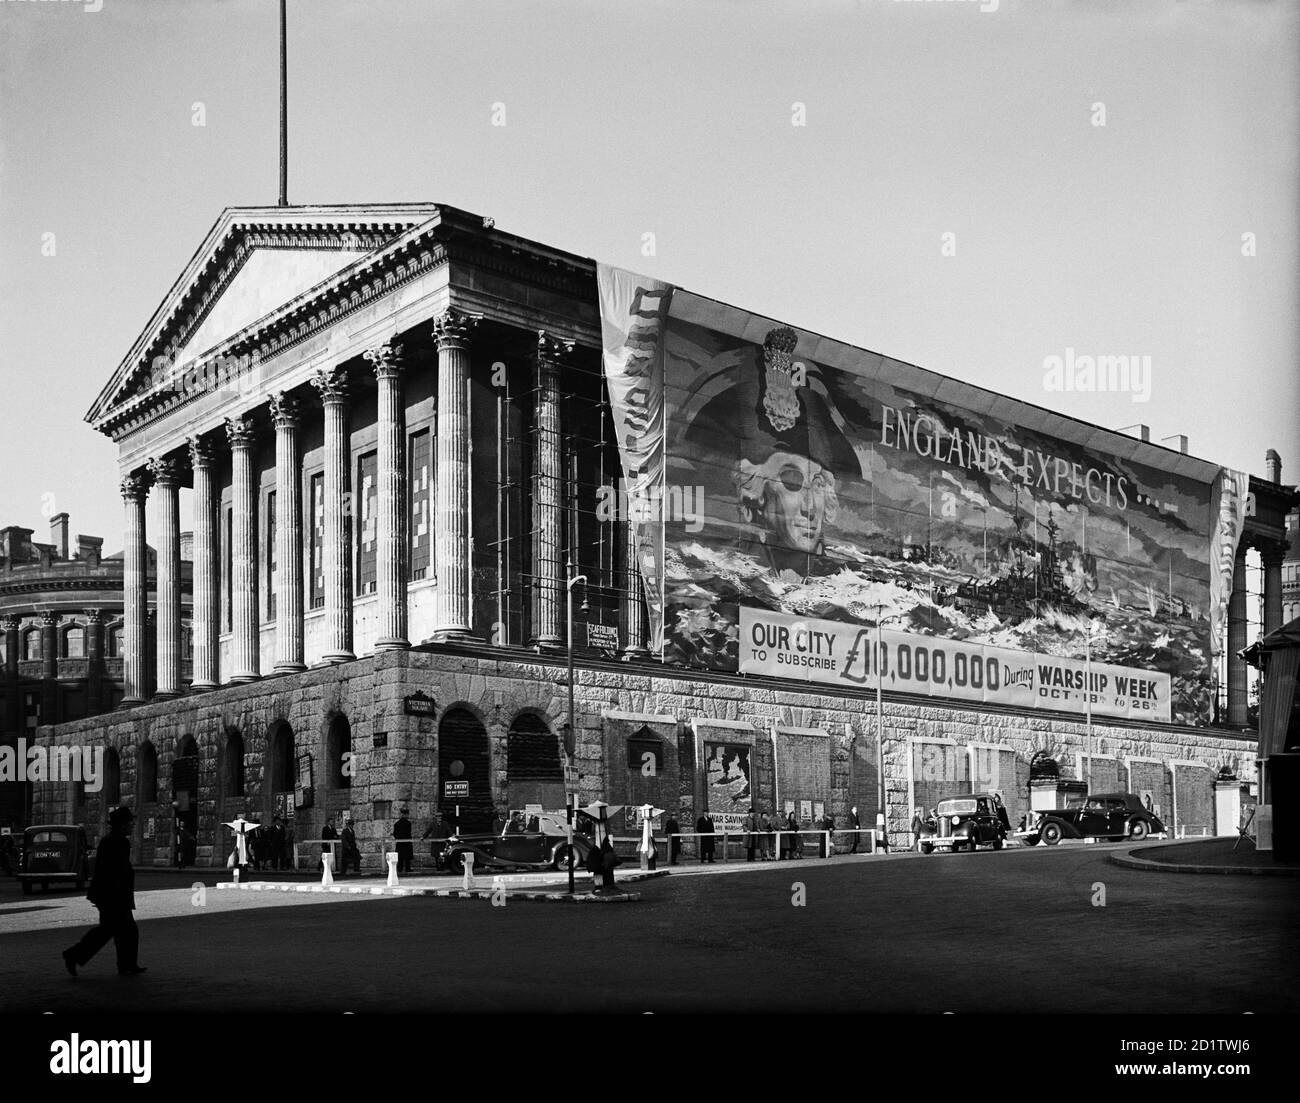 RATHAUS, Birmingham, West Midlands. Blick auf das Rathaus mit einem Banner auf einer Seite, Förderung der Kriegsschiffwoche, 18. - 26. Oktober. 'England erwartet, dass unsere Stadt £10,000,000 abonniert...' Fotografiert von G B Mason im Jahr 1941. Stockfoto